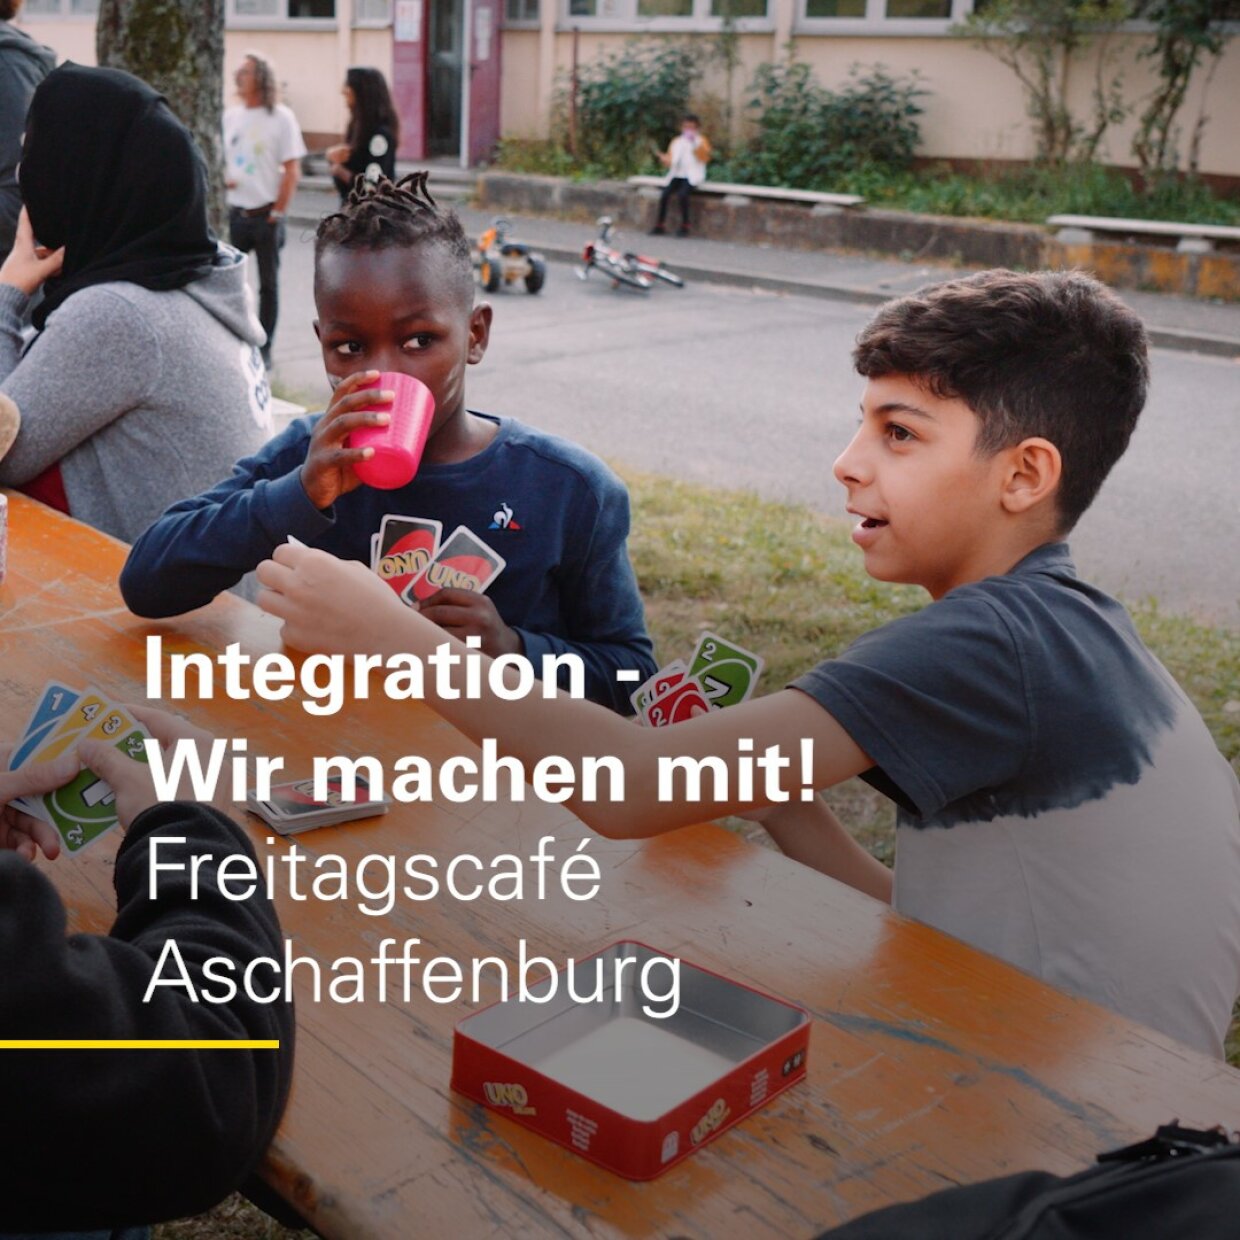 Grafik: Integration - Wir machen mit! Freitagscafé Aschaffenburg